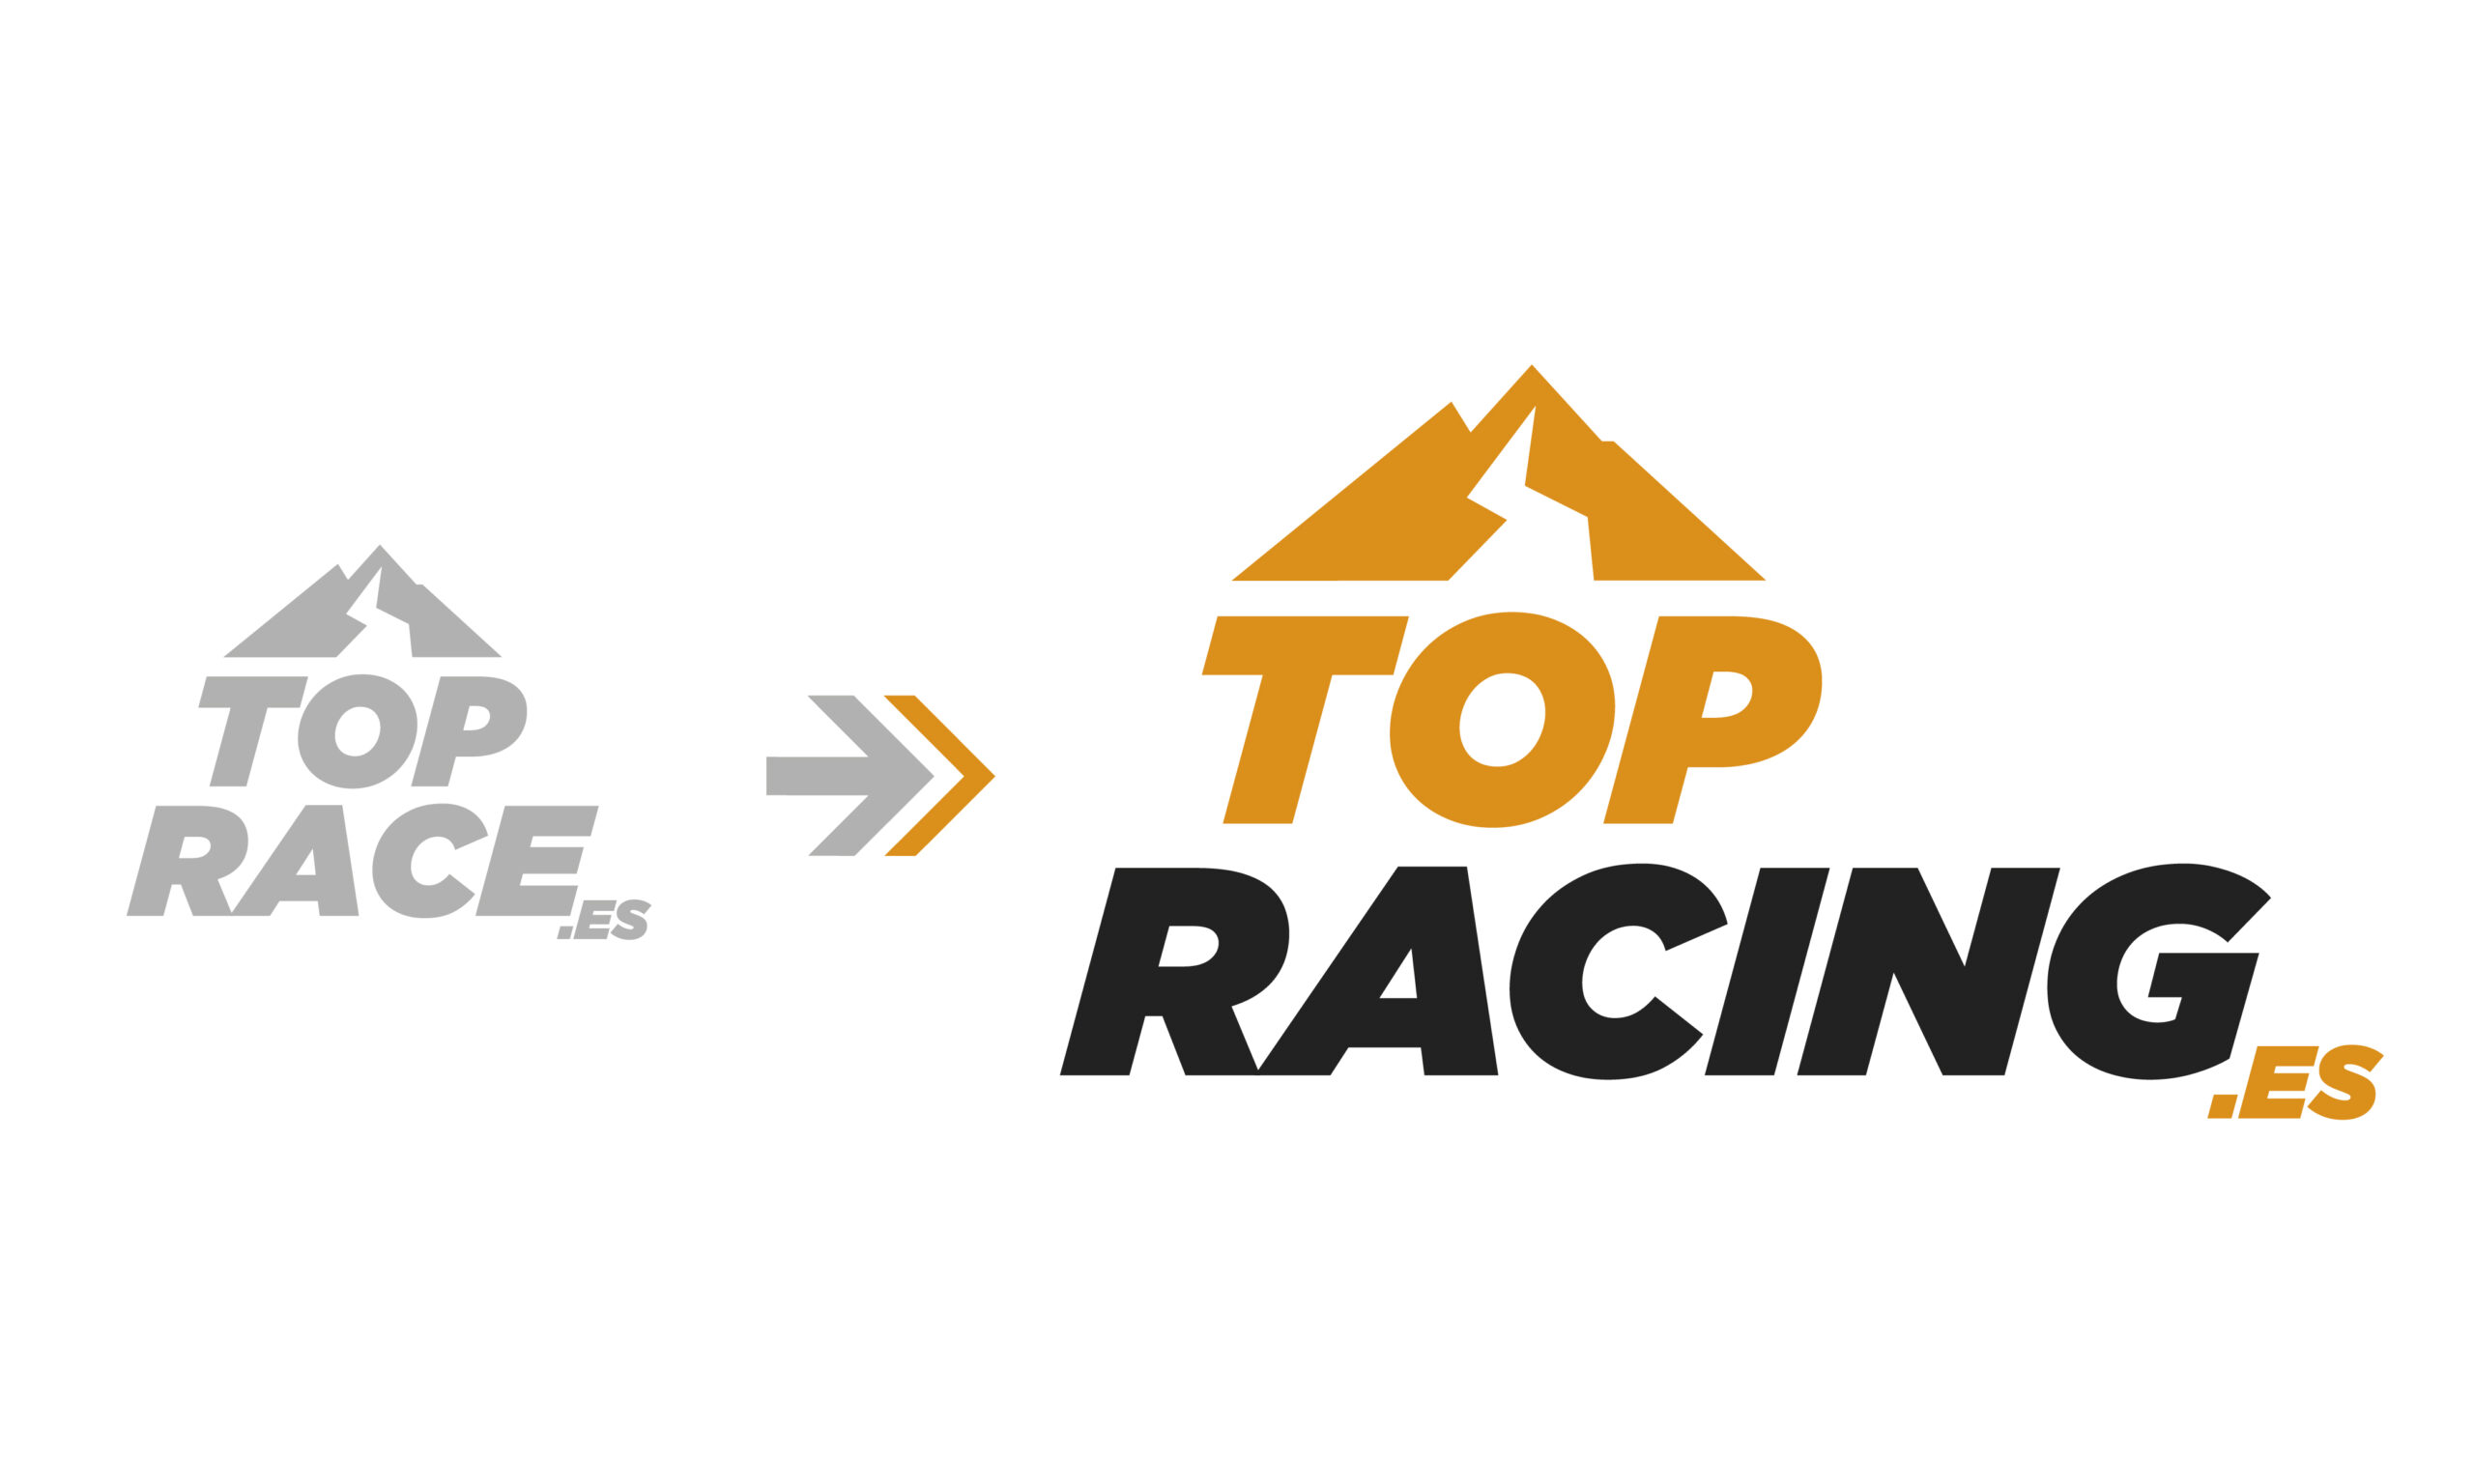 De Top Race a Top Racing